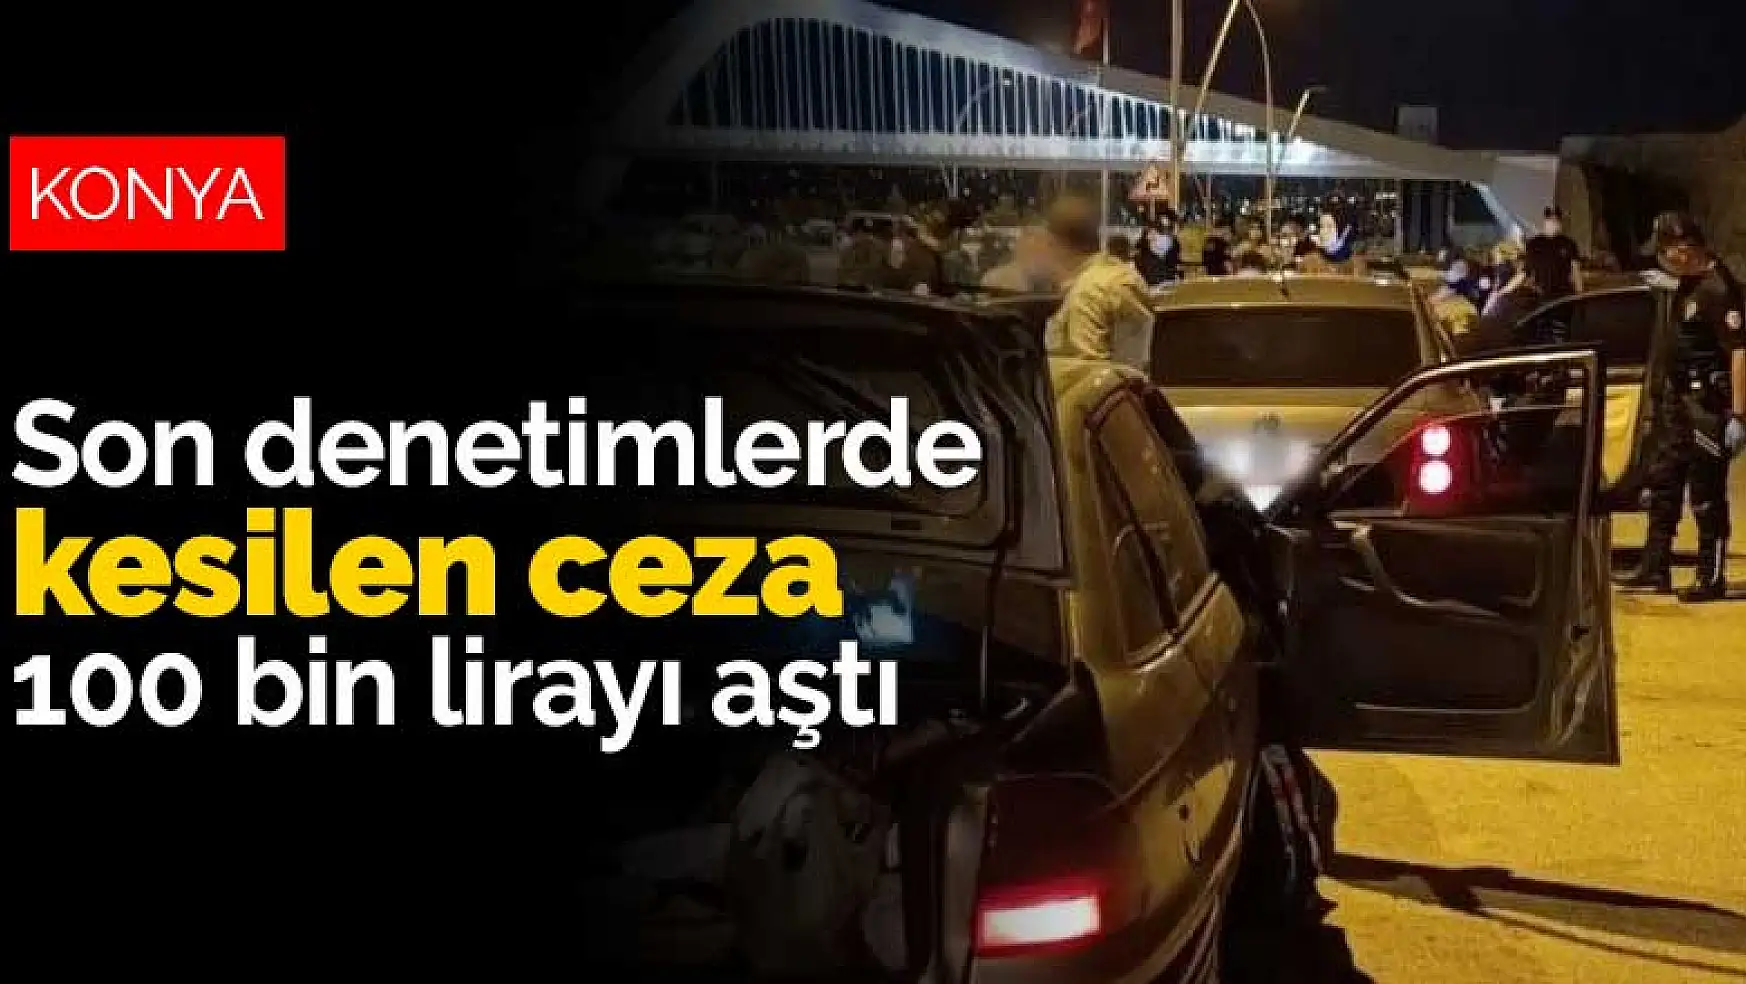 Konya'daki son denetimlerde kesilen ceza 100 bin lirayı aştı